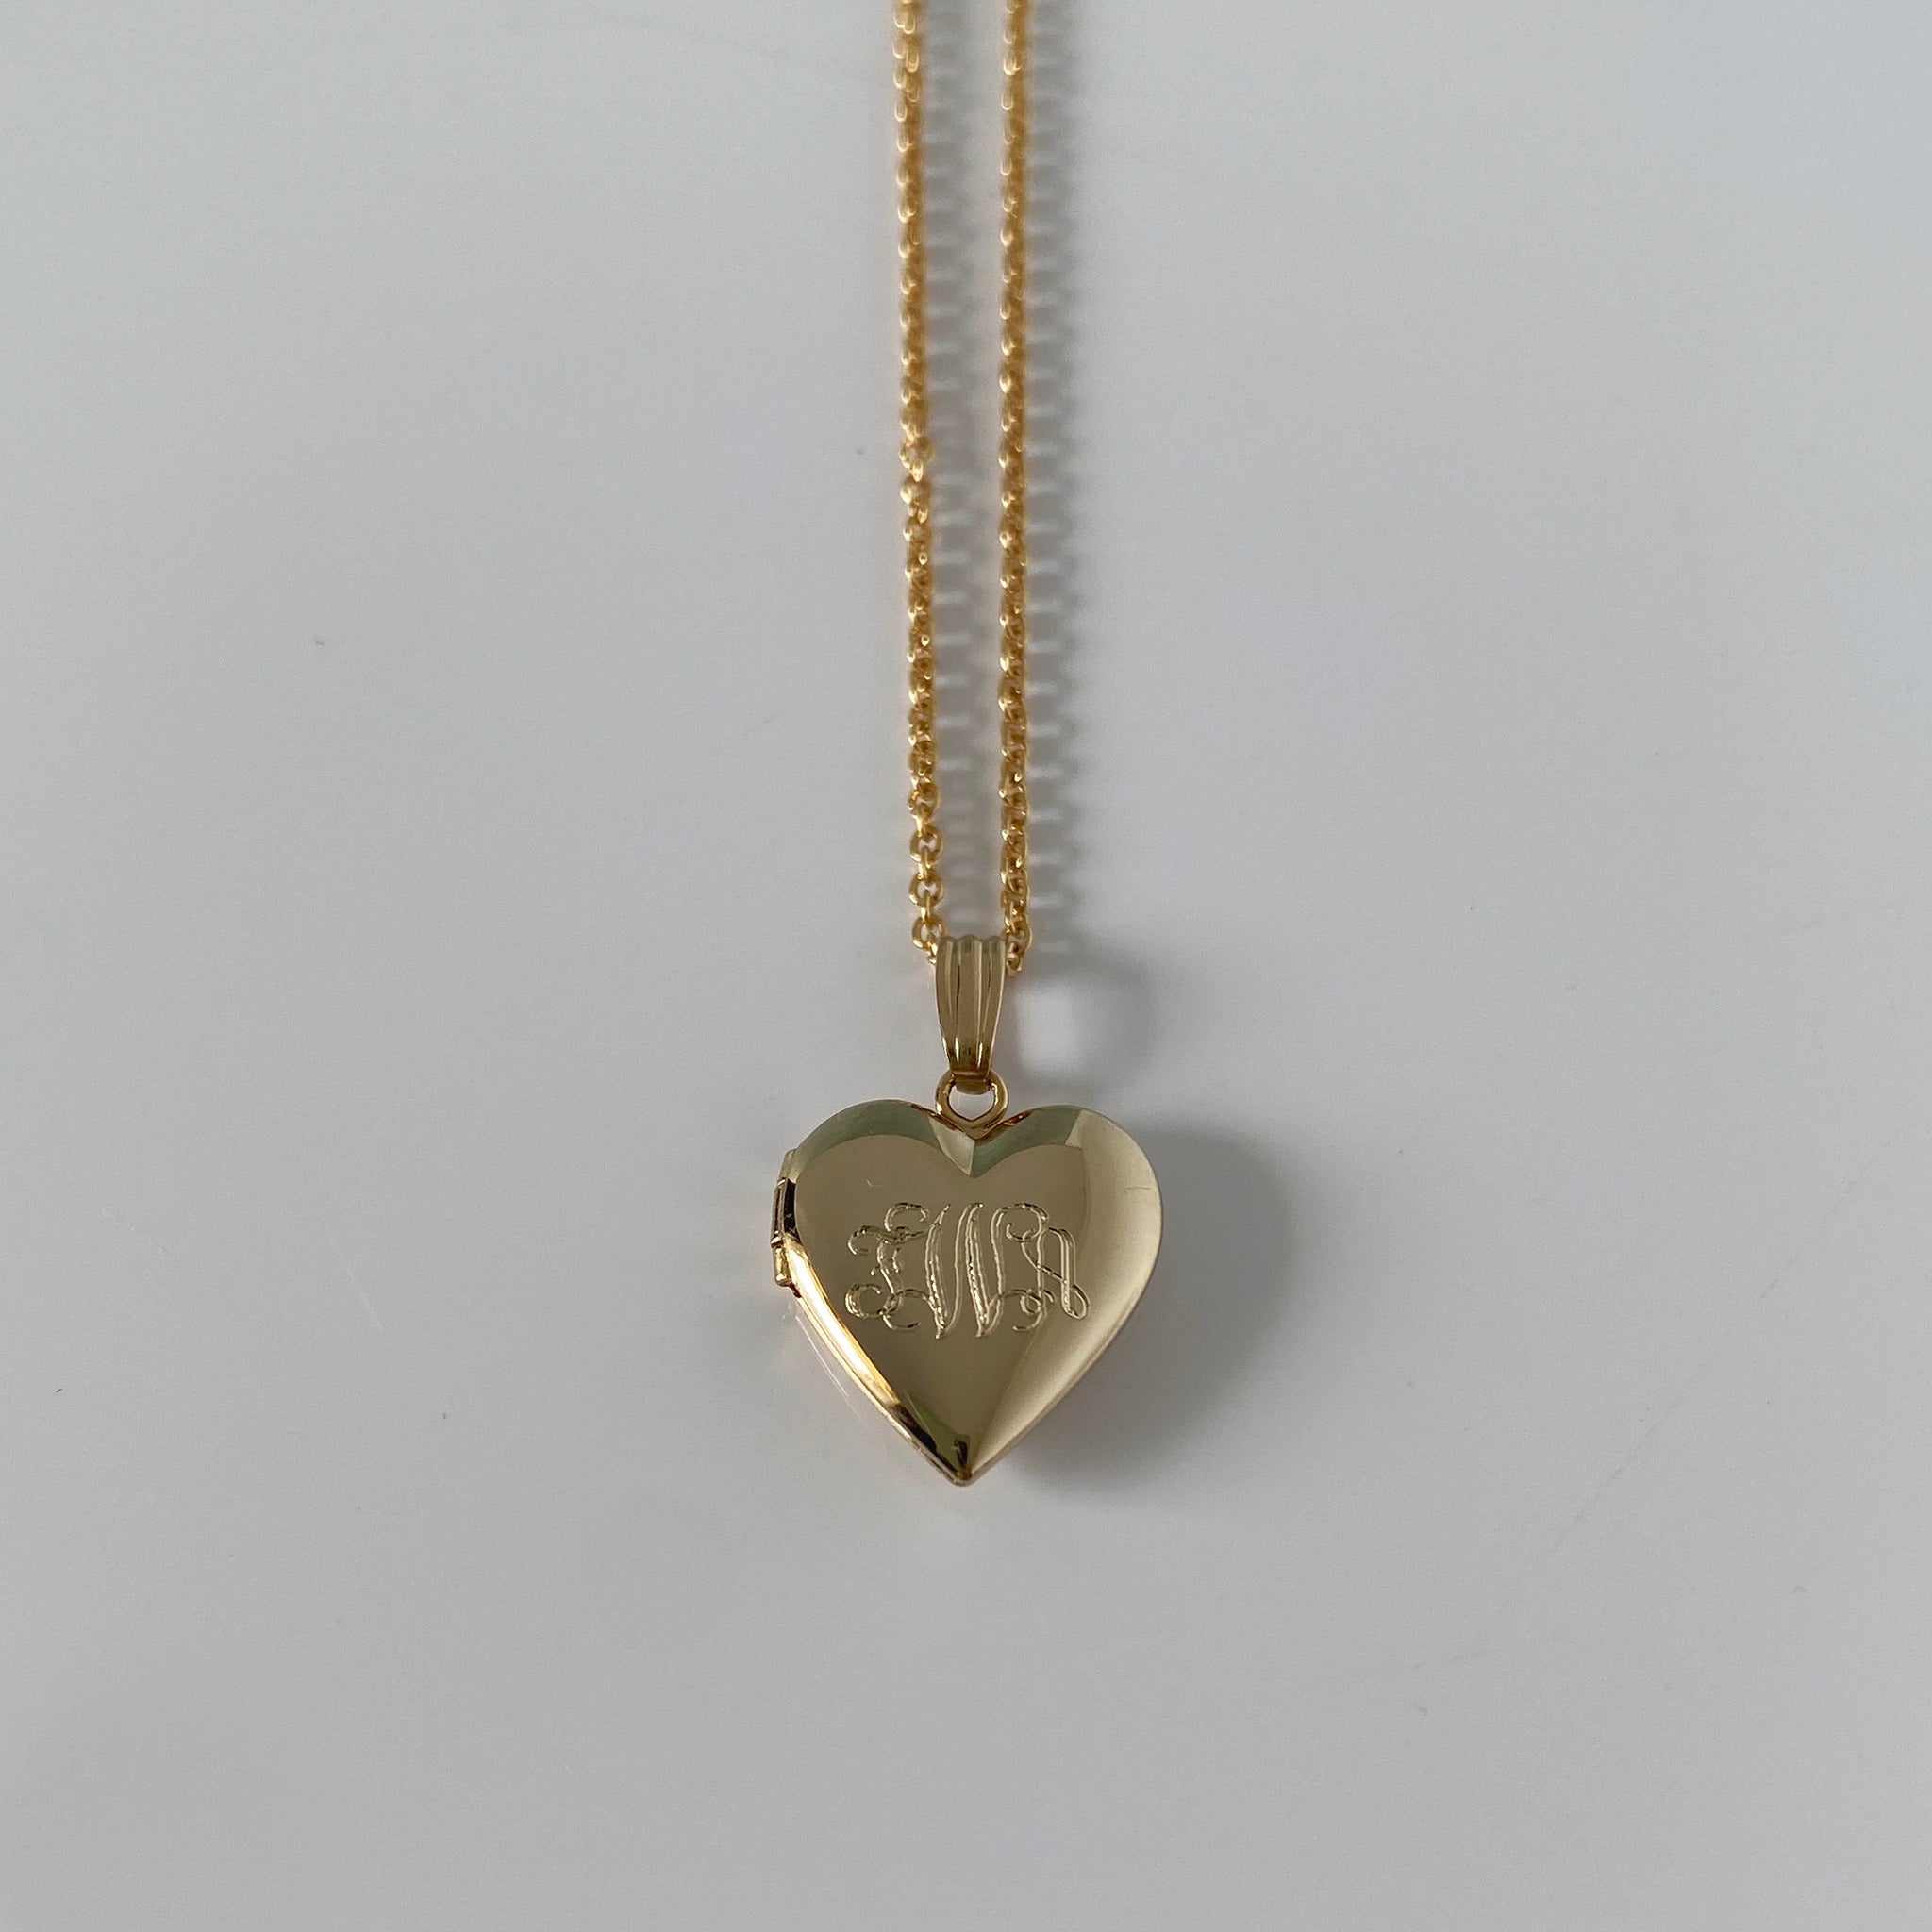 Child 14K Gold Filled Heart Locket Necklace with machine engraved interlocking script monogram